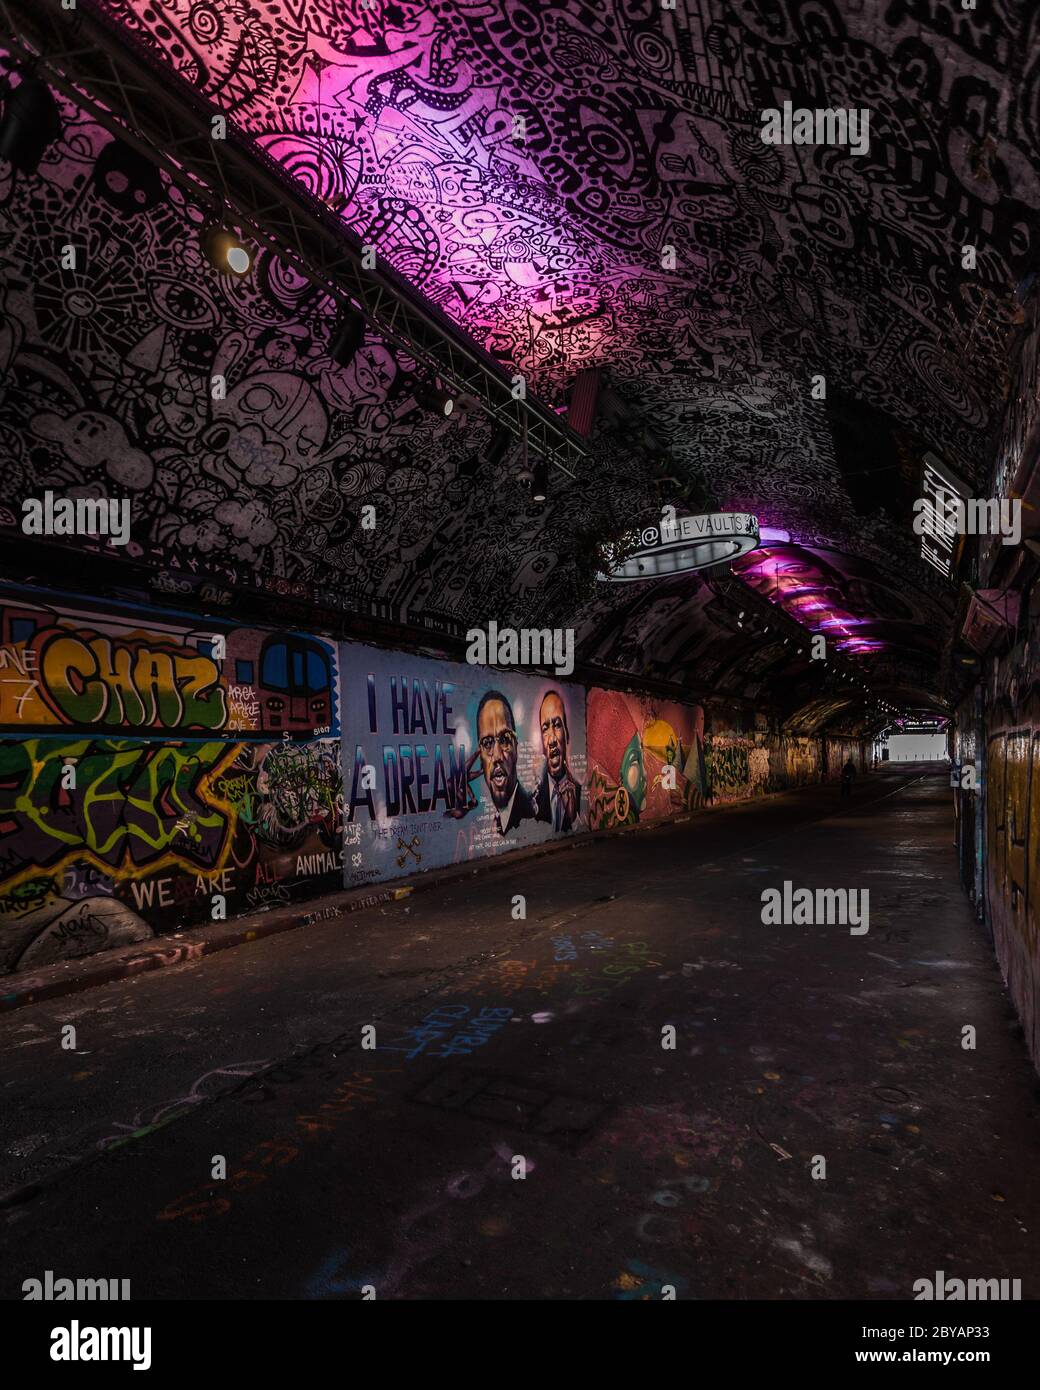 La questione della vita nera è rappresentata nel famoso tunnel dei graffiti di Leake Street a Londra. Ritratti di Martin Lutero King e Malcolm X sulla parete. Foto Stock